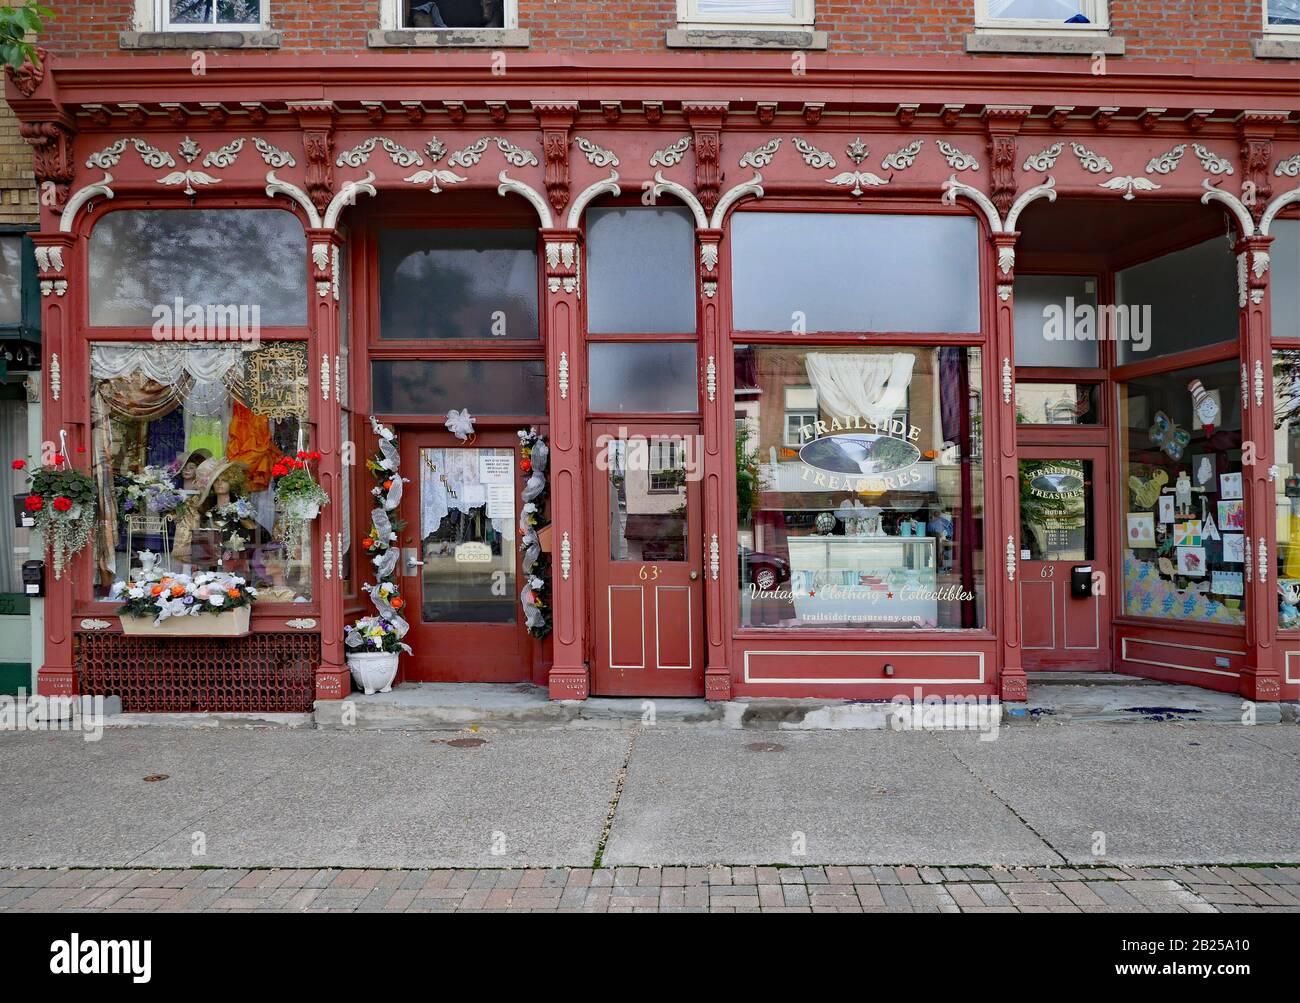 Elmira, NY, USA - MAI 2019: Urige Altstädte in der Region Finger Lakes bewahren alte Hauptstraßen, die oft für Antiquitätengeschäfte genutzt werden. Stockfoto